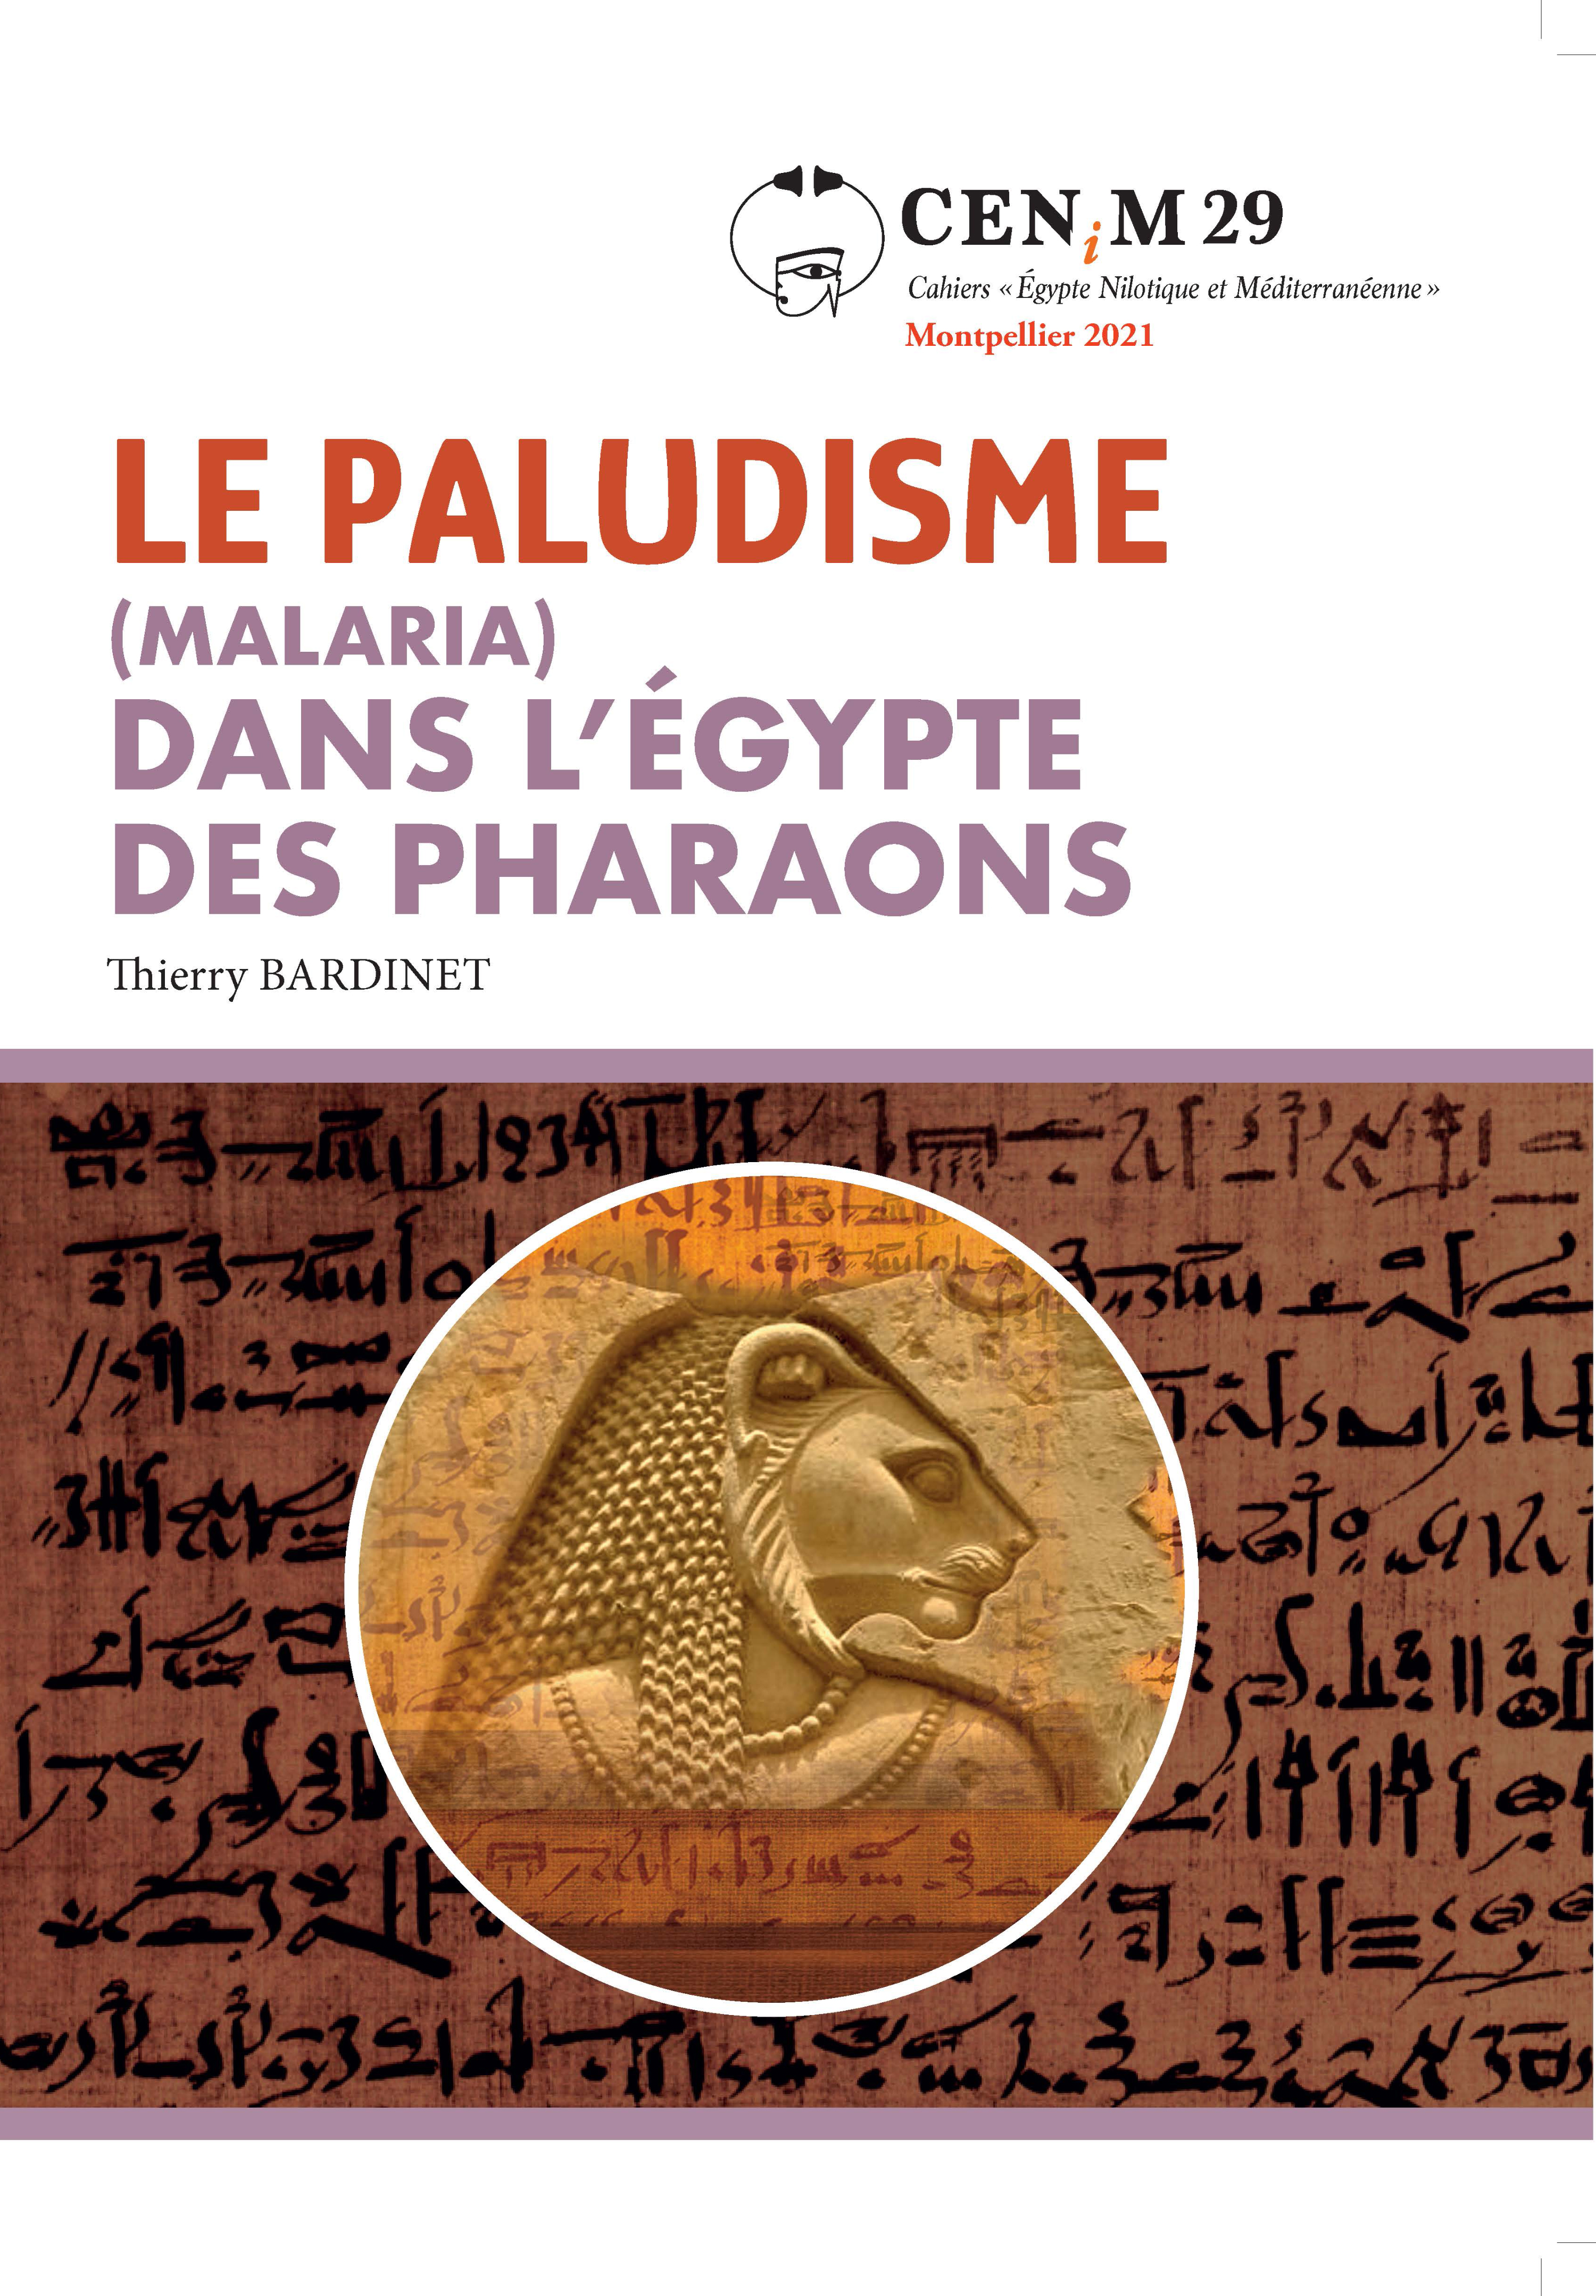 Le paludisme (malaria) dans l’Égypte des pharaons. Étude d’un contexte médical et historique